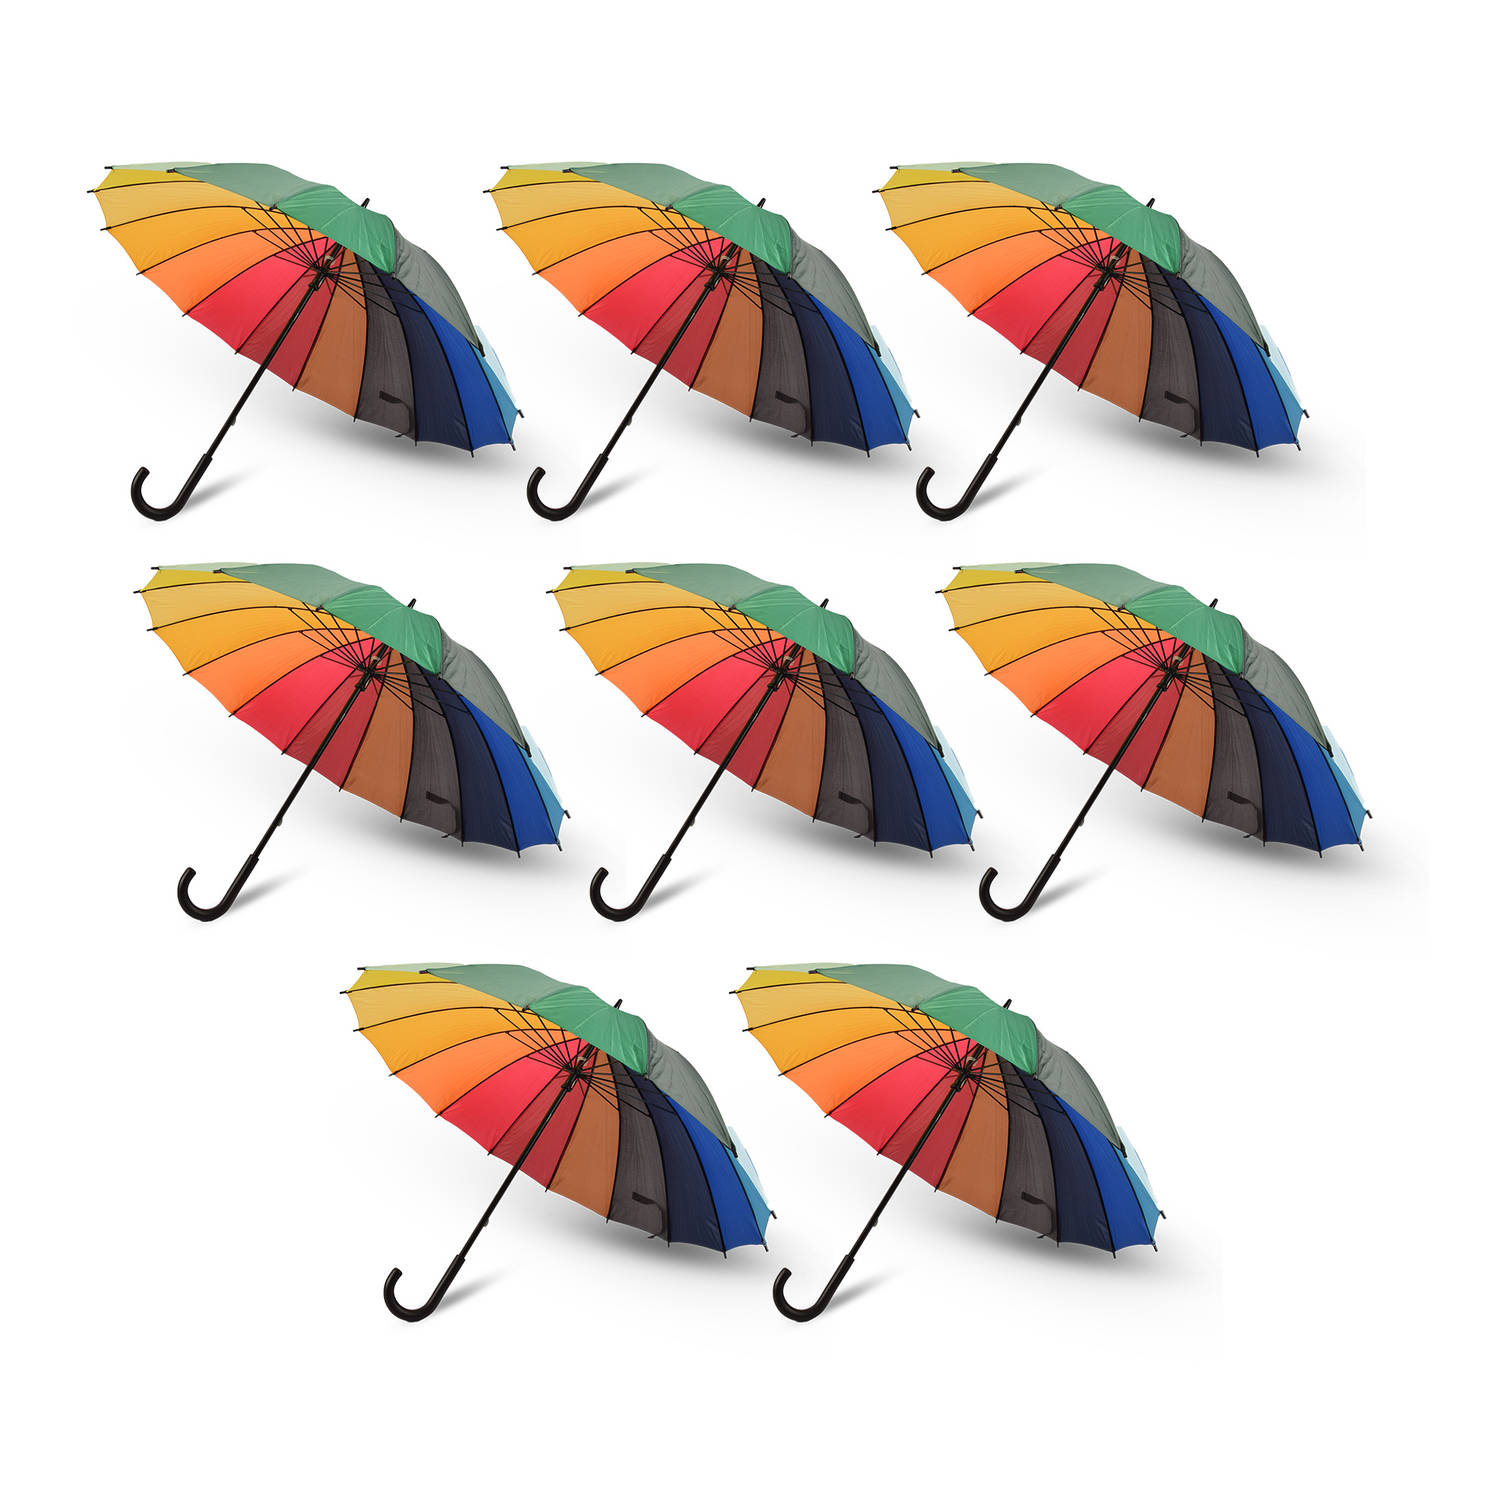 Voordelpak: Discountershop Regenboog Paraplu voor Volwassenen - Windproof met Haak Handvat - Multi Collors - Set van 8 LGBTQ Paraplu - 98cm Diameter